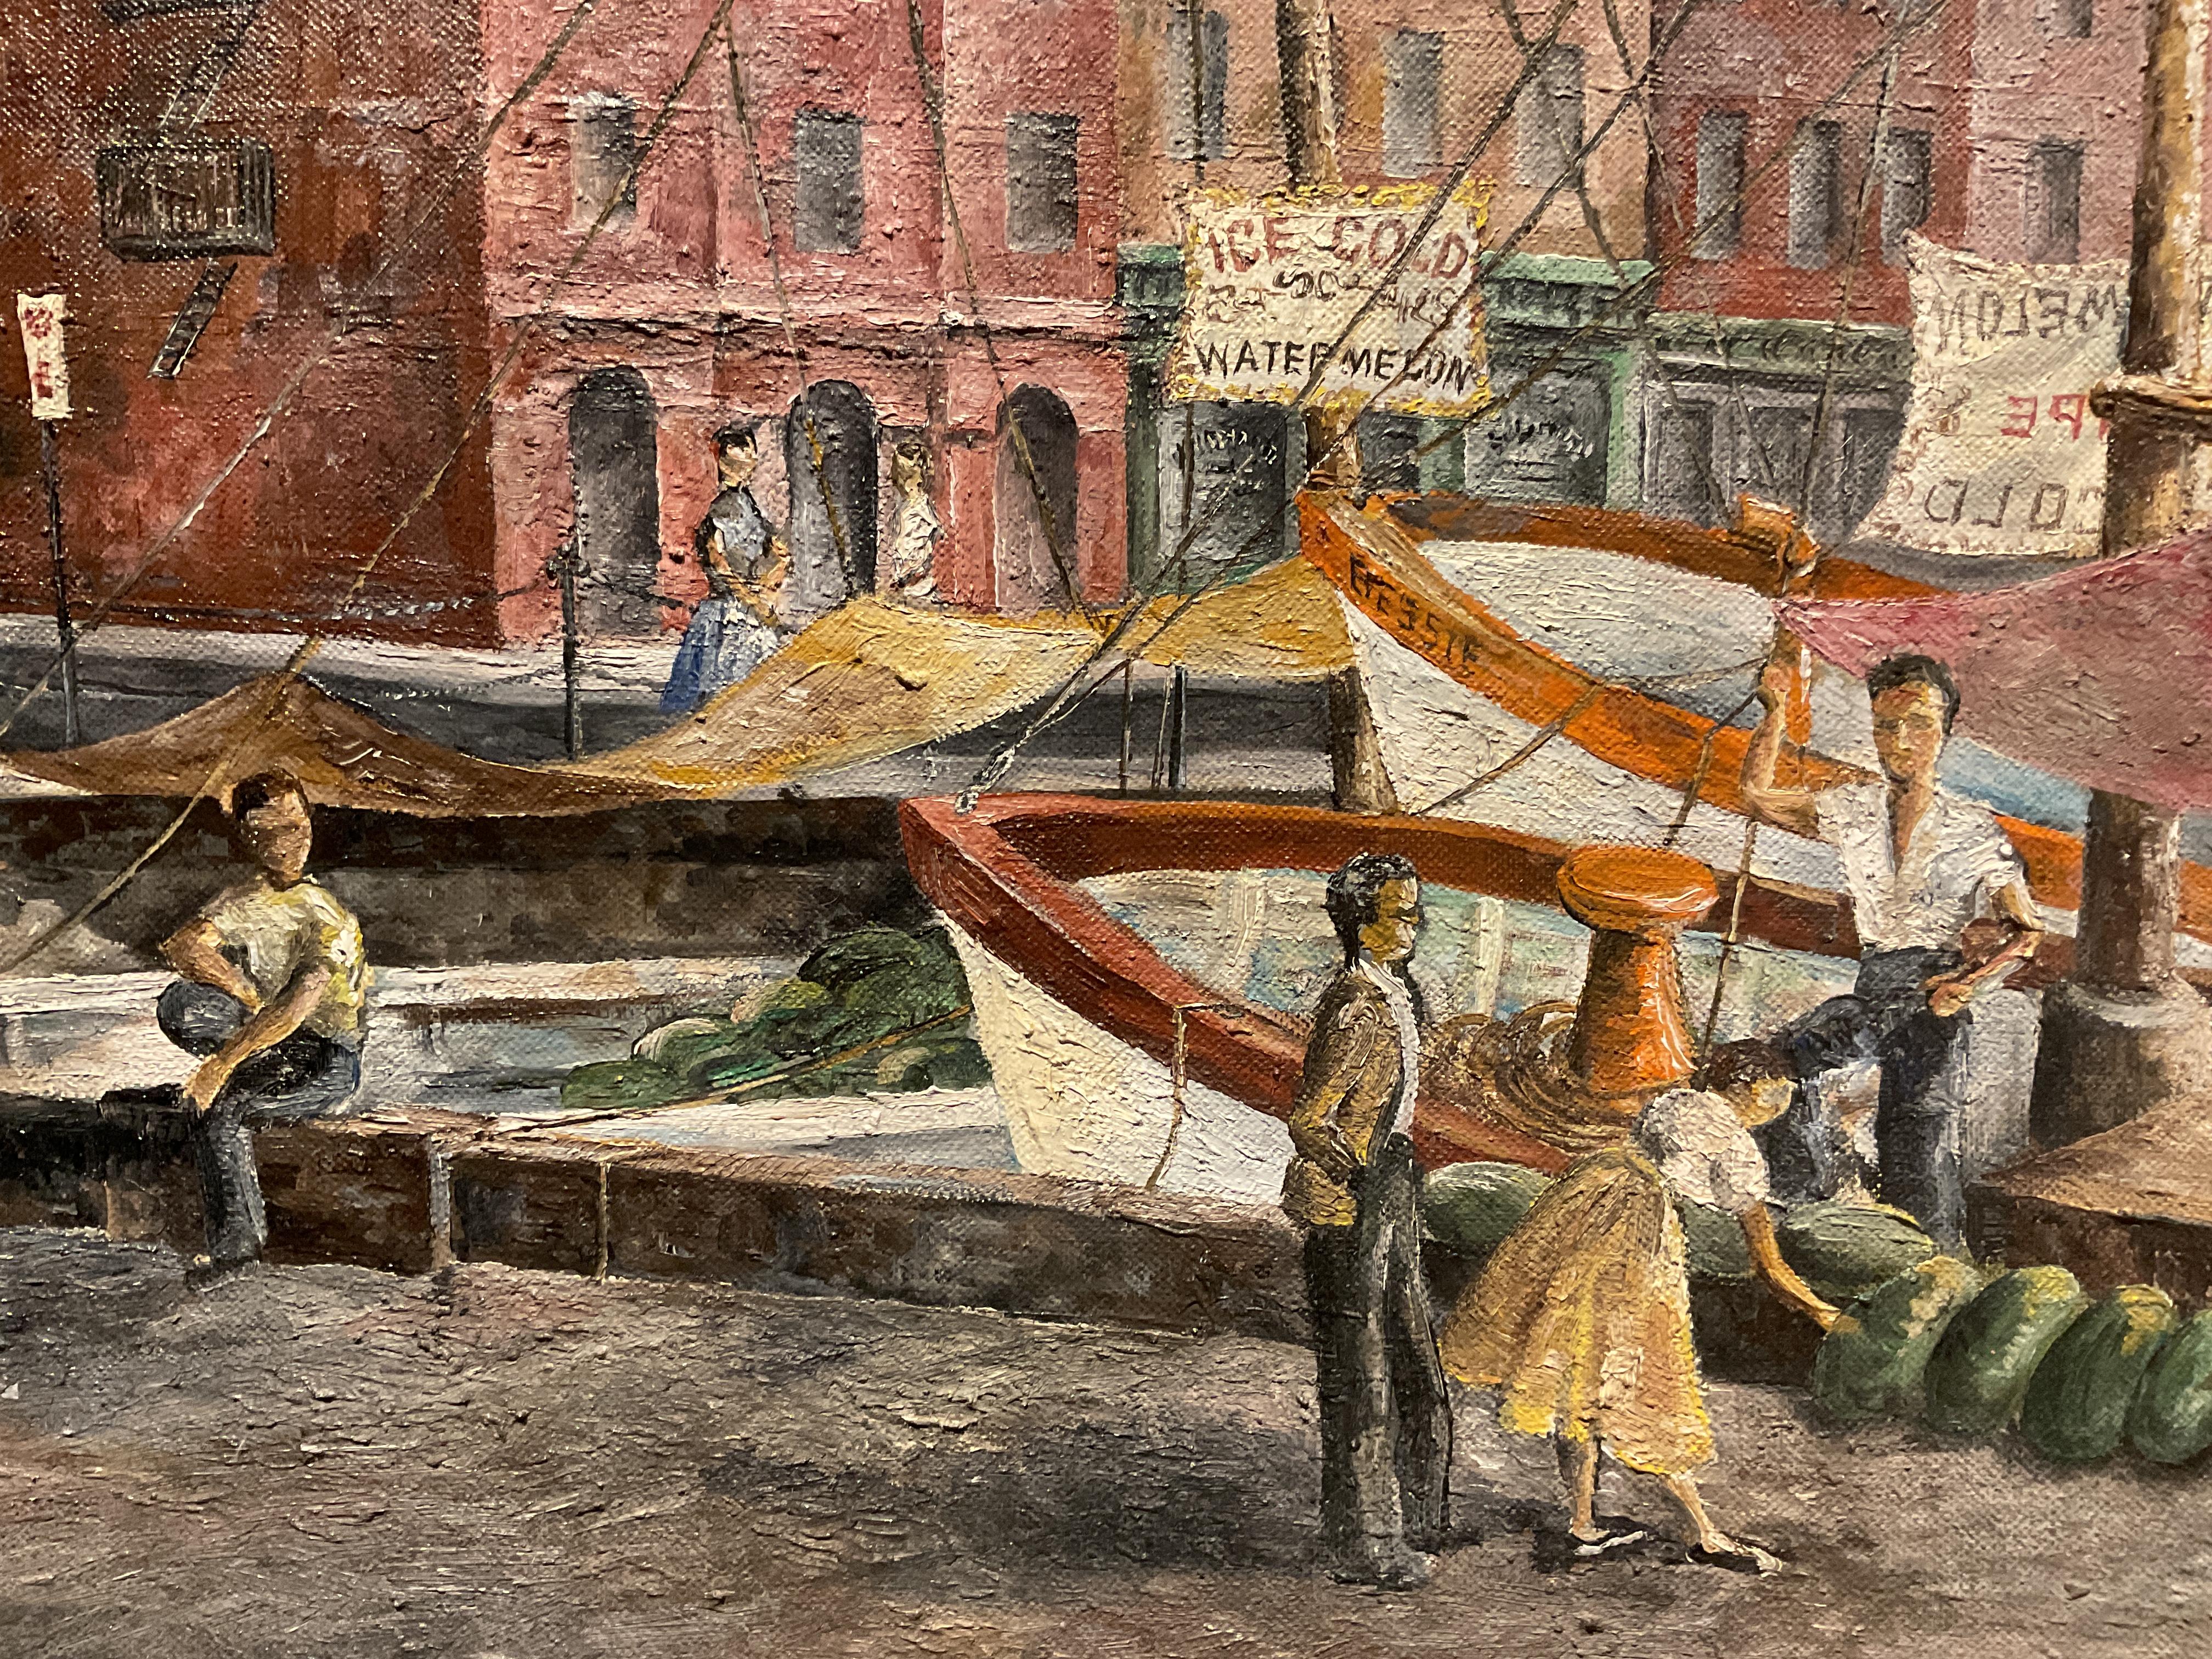 Rare Baltimore Harbor Oil Painting, Pratt Street Dock, ca 1950 - Rosalie Hamblin For Sale 1